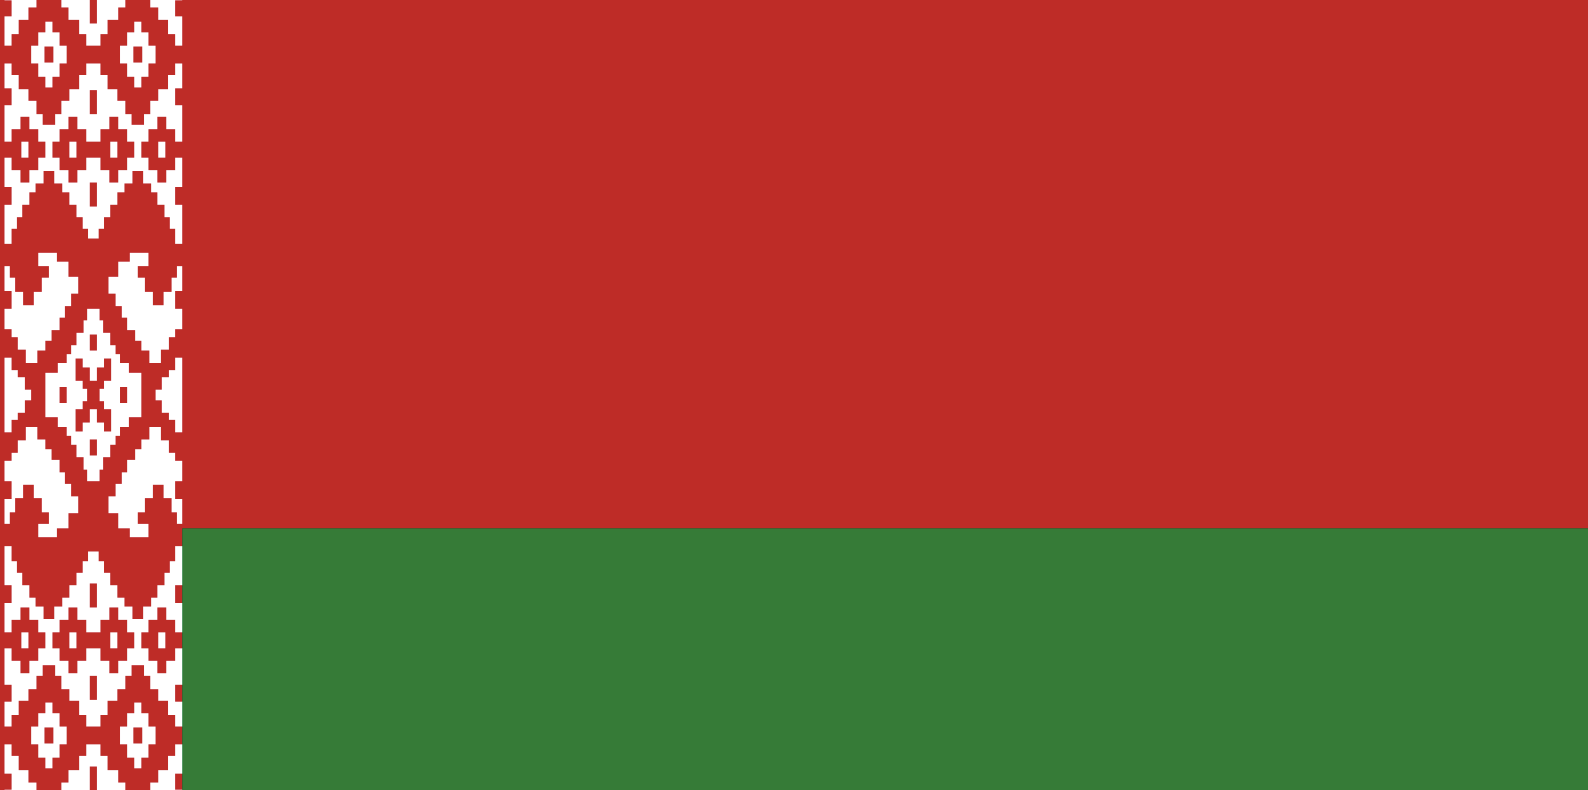 Belarus - Proxy